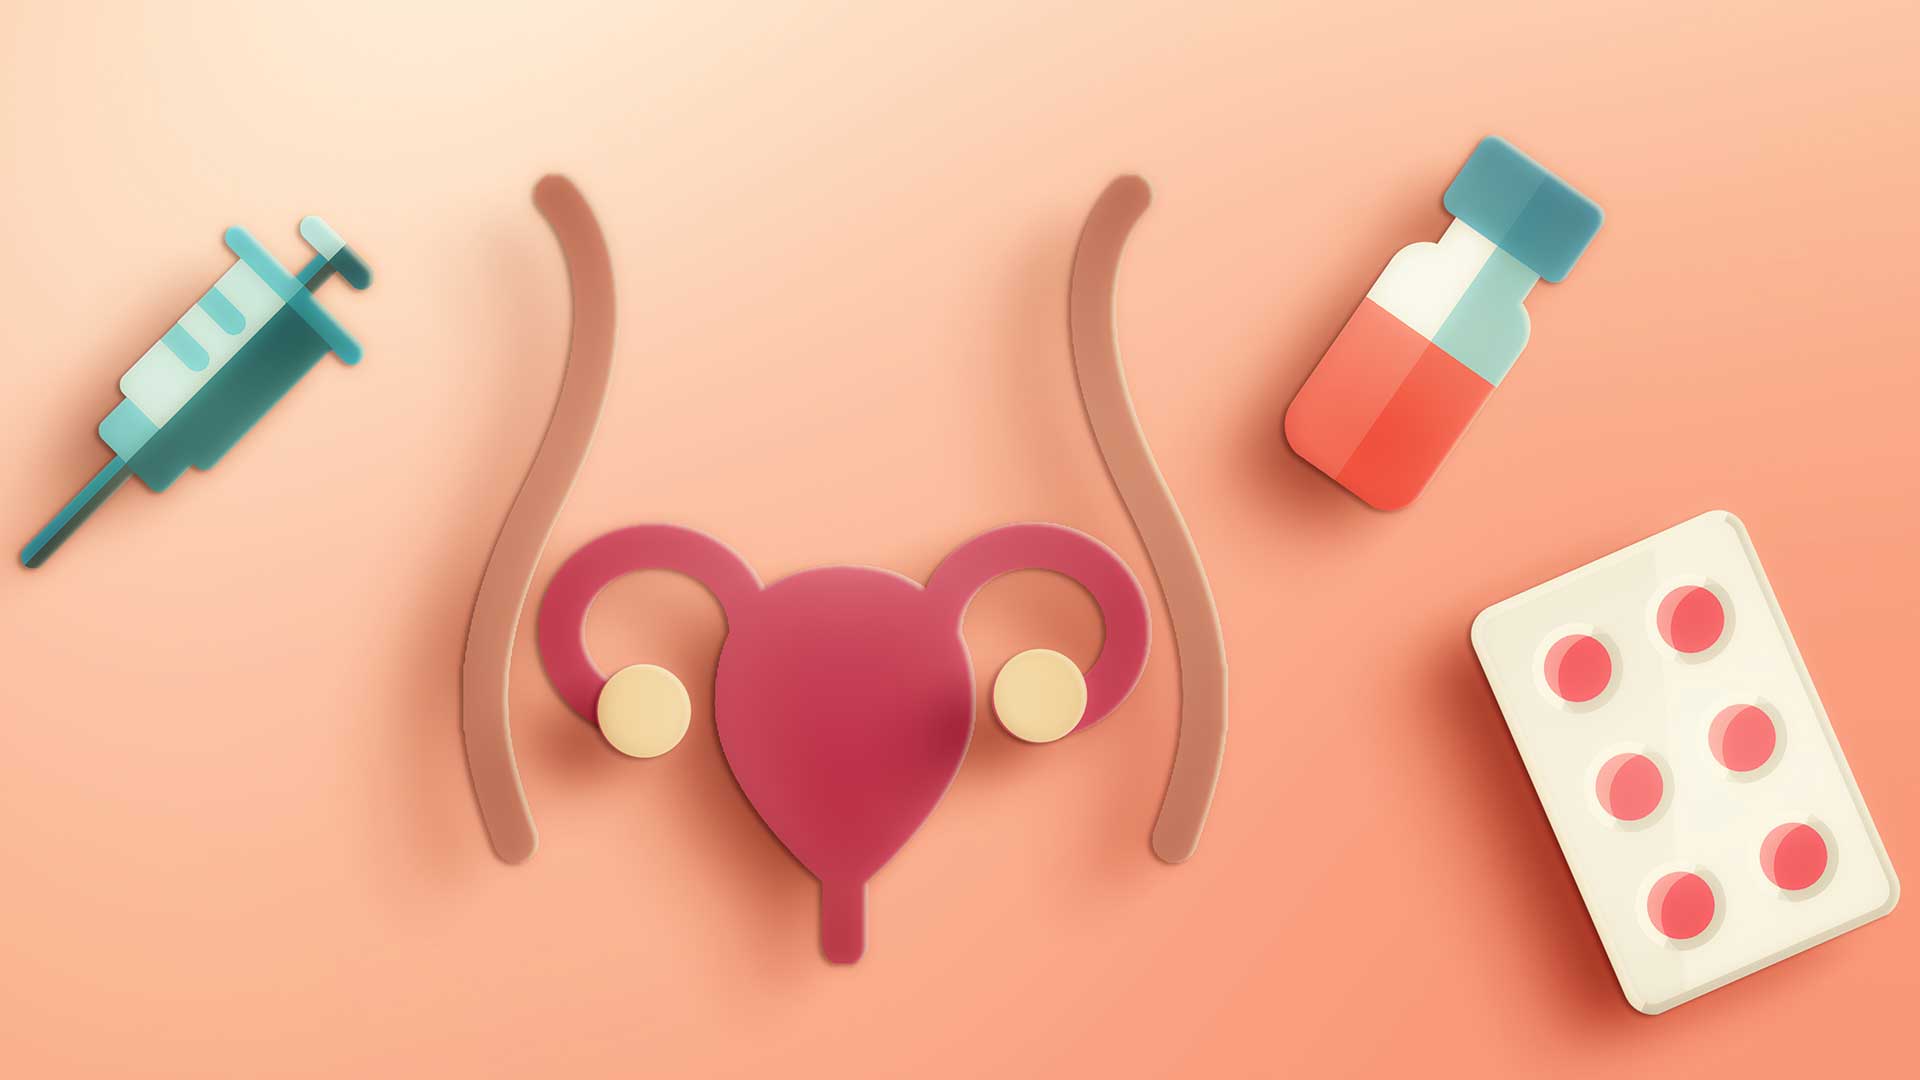 ilustrações de um útero, uma seringa, um frasco de remédio e de uma cartela de comprimidos